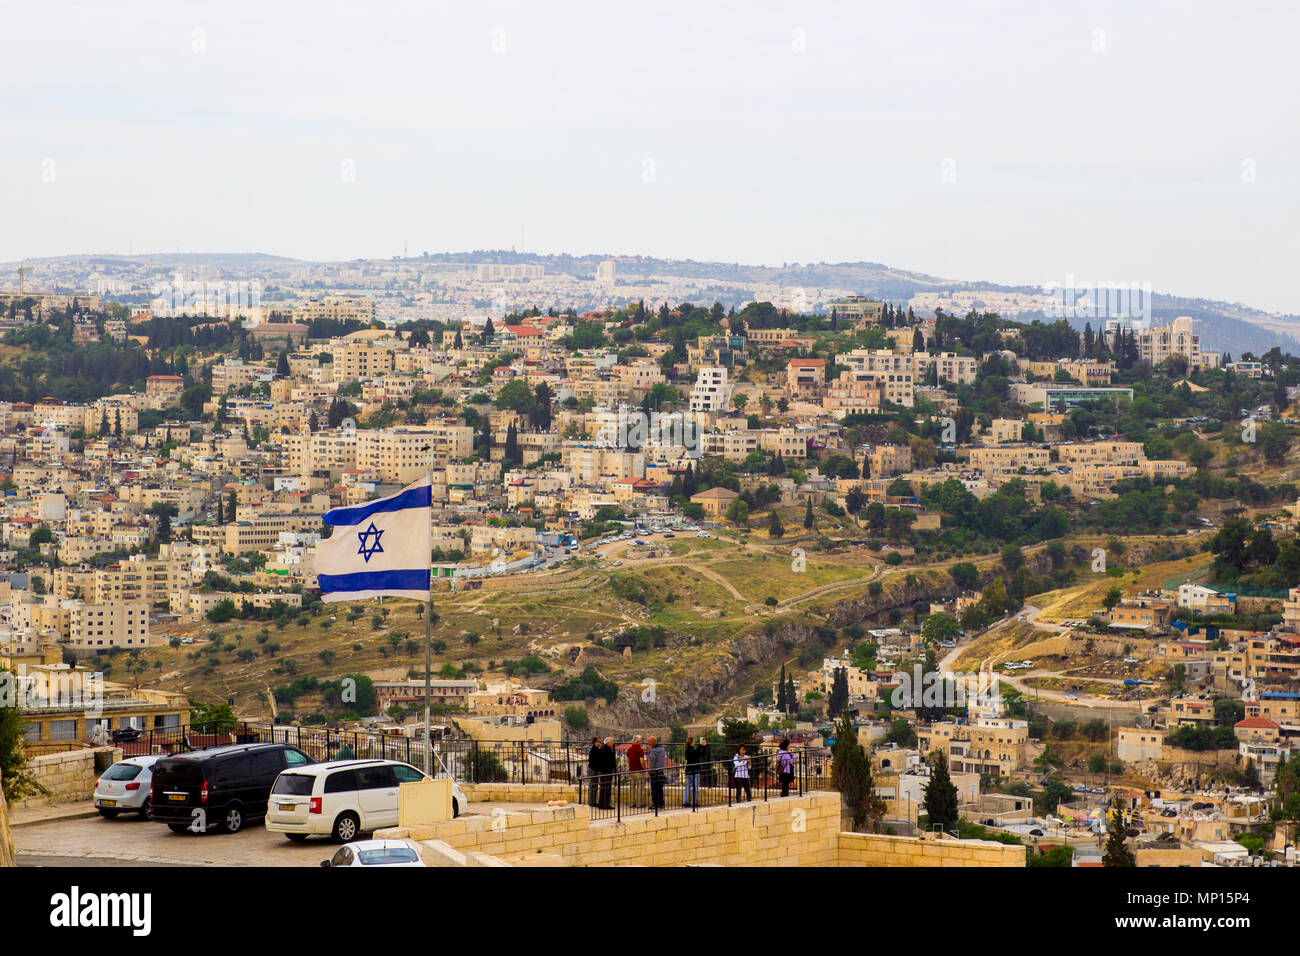 8 maggio 2018 una vista di una bandiera israeliana che fluttua nel vento sul Monte degli Ulivi con la famosa città di Gerusalemme Israele in background Foto Stock